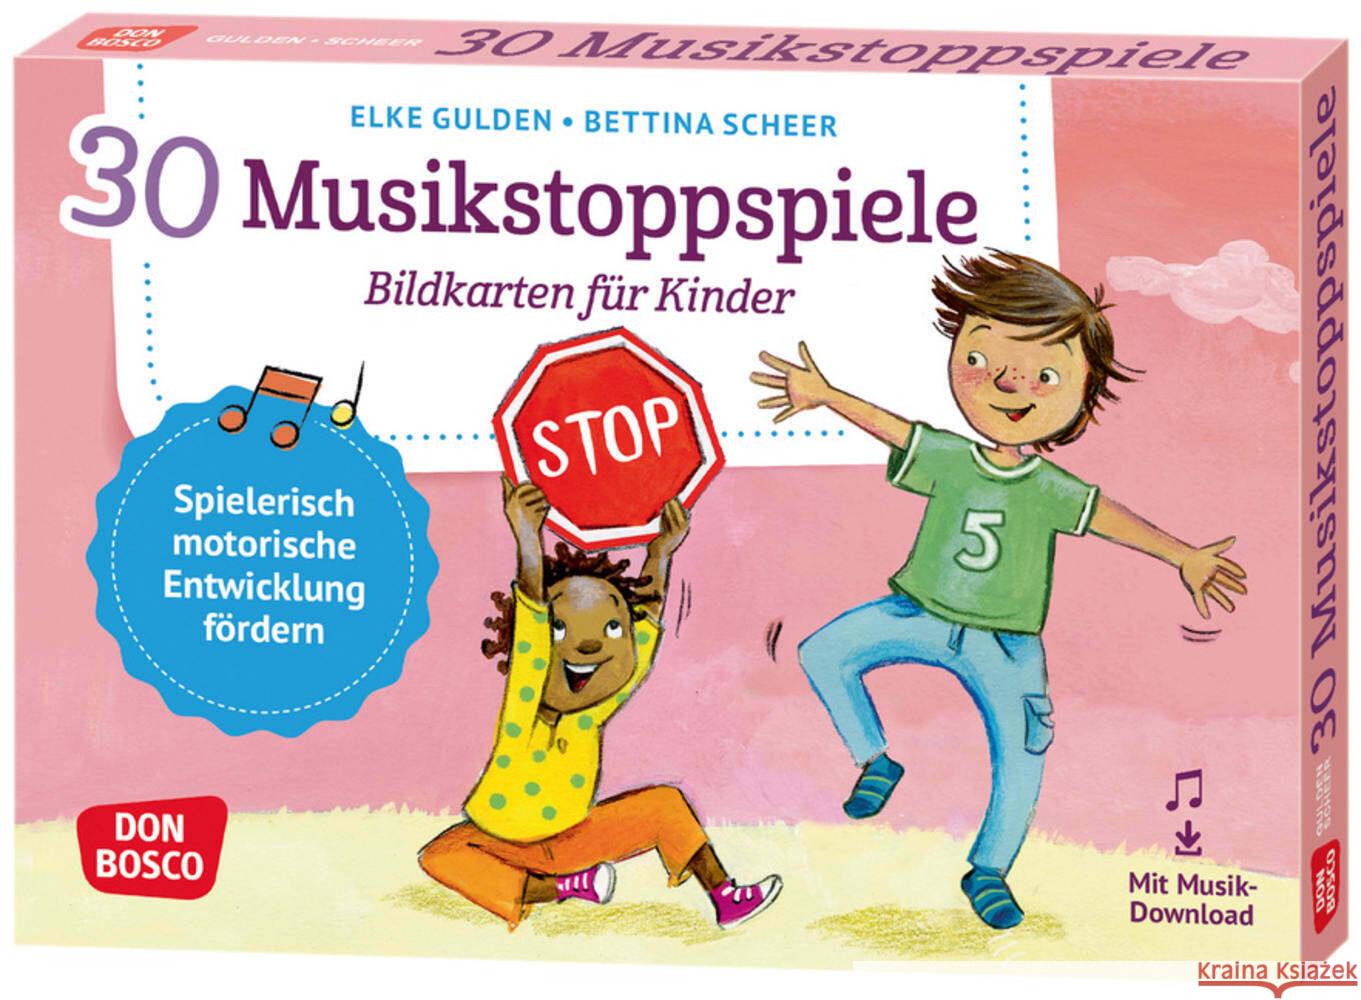 30 Musikstoppspiele. Bildkarten für Kinder, m. 1 Beilage Gulden, Elke, Scheer, Bettina 4260179517099